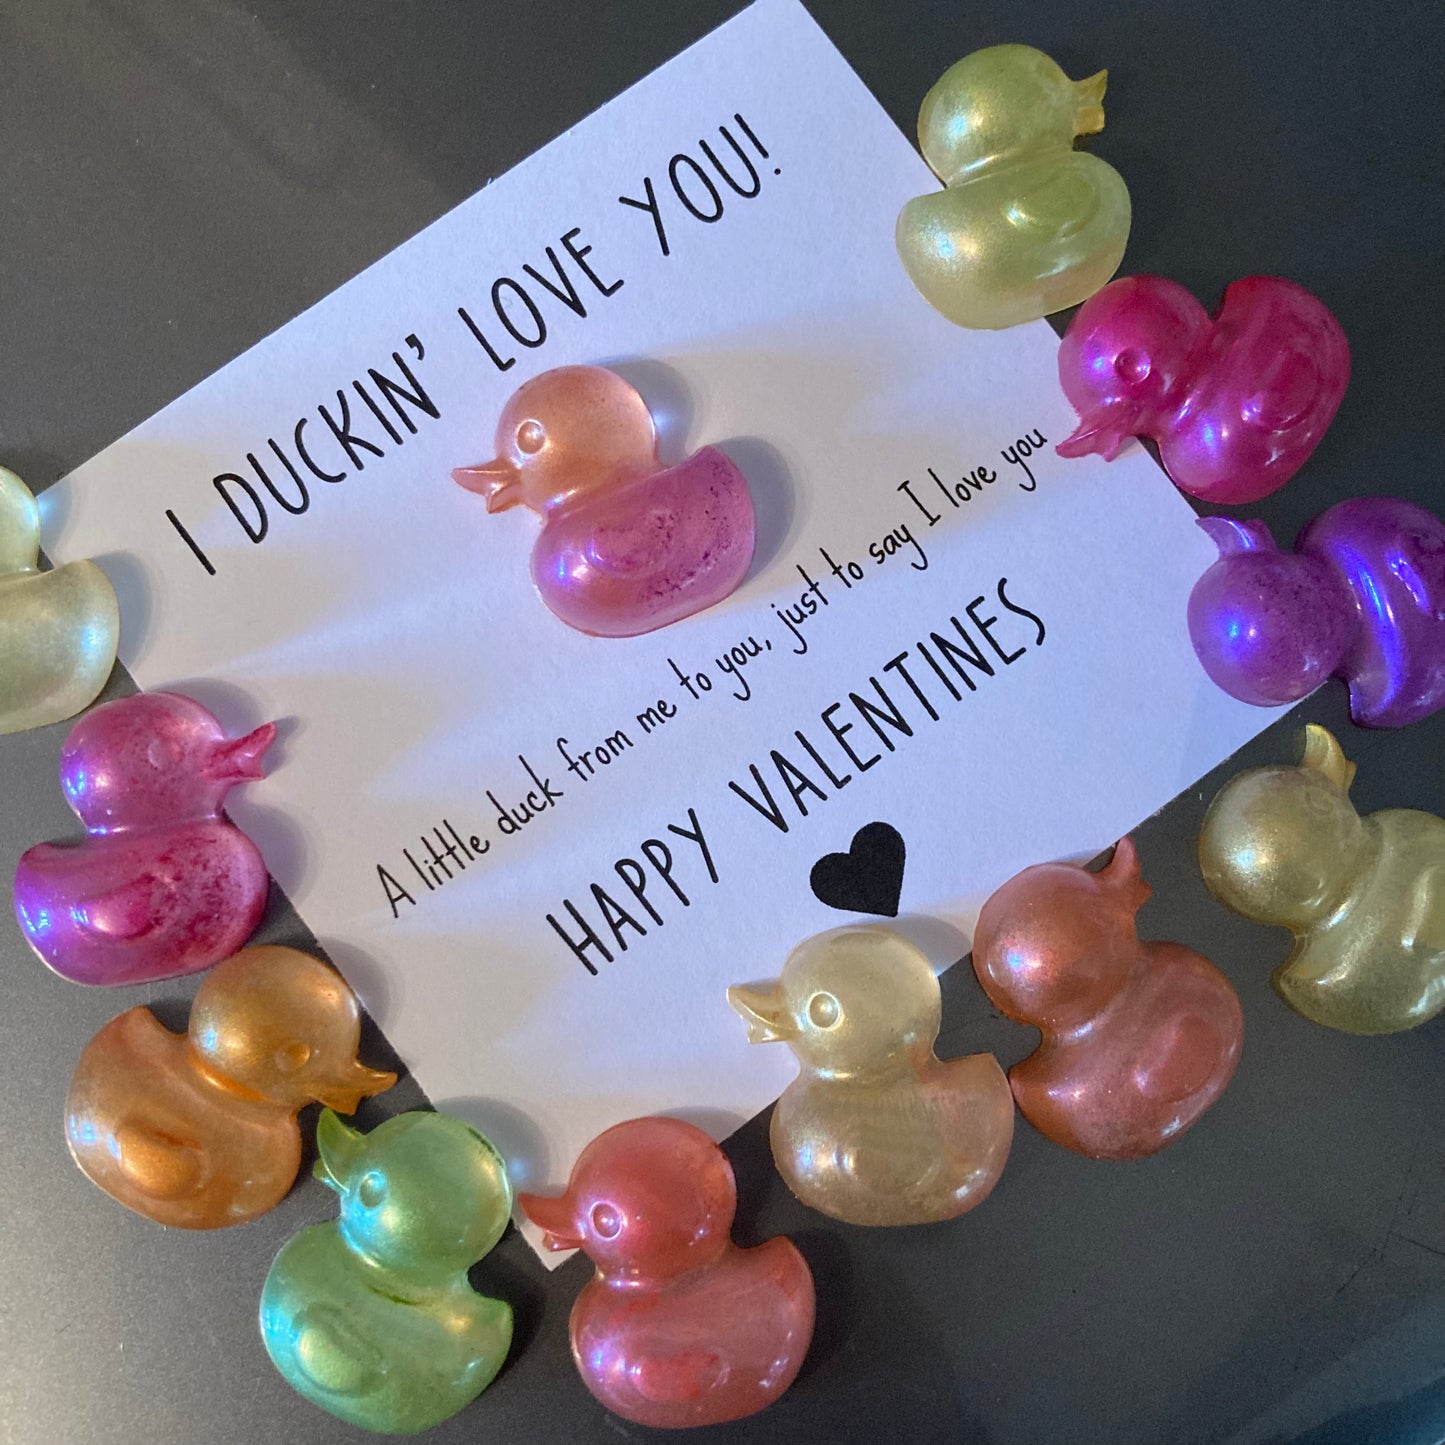 Duckin Love You